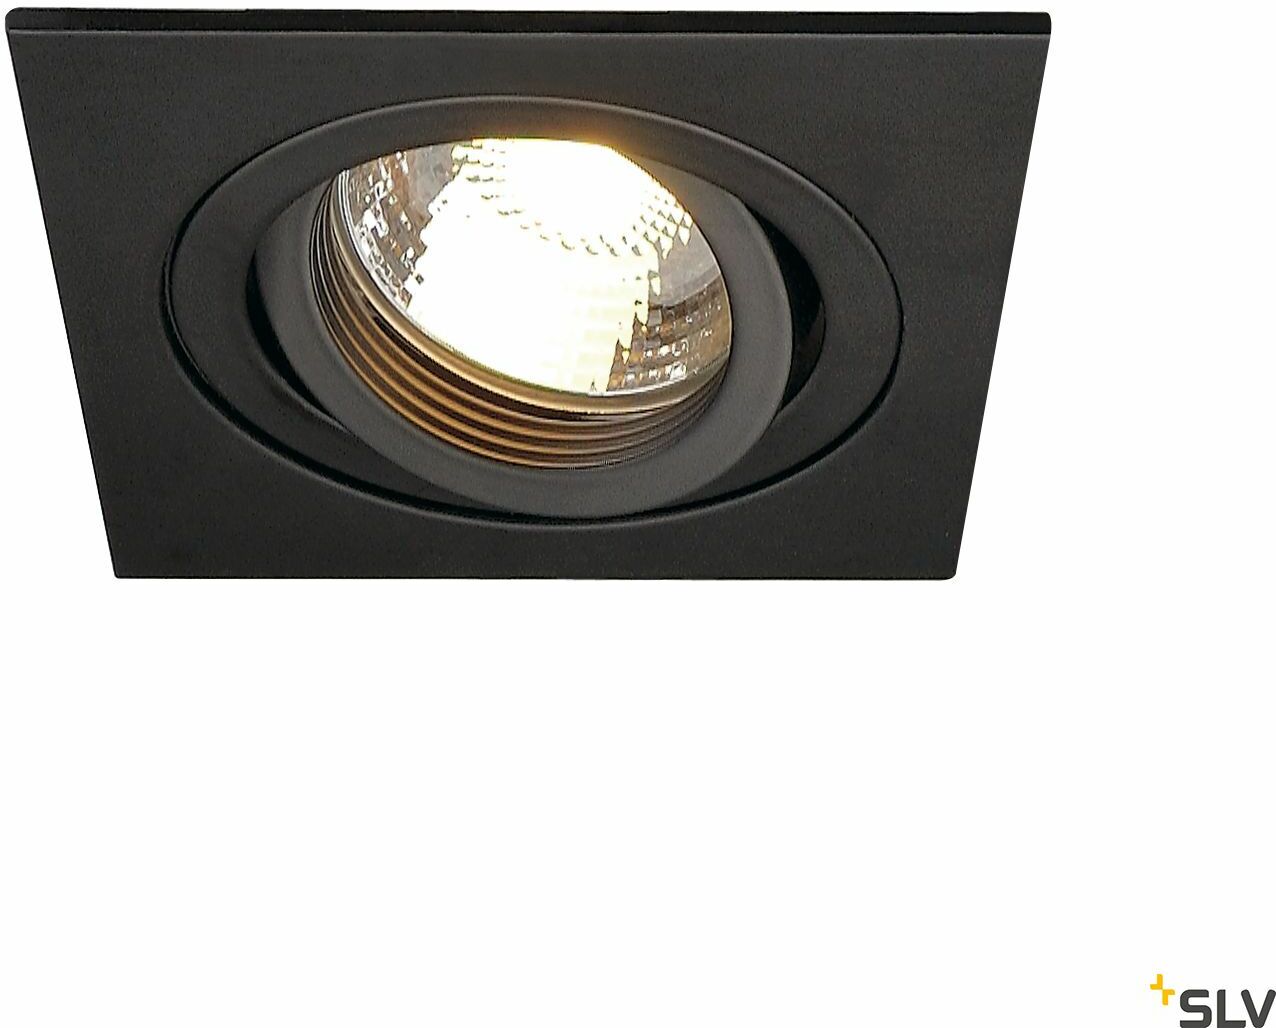 NEW TRIA 78, QPAR51, lampa sufitowa do wbudowania, kwadratowa, 9 x 9 cm, gł. 10,5 cm, otwór mont. 7,8 cm, kolor czarny